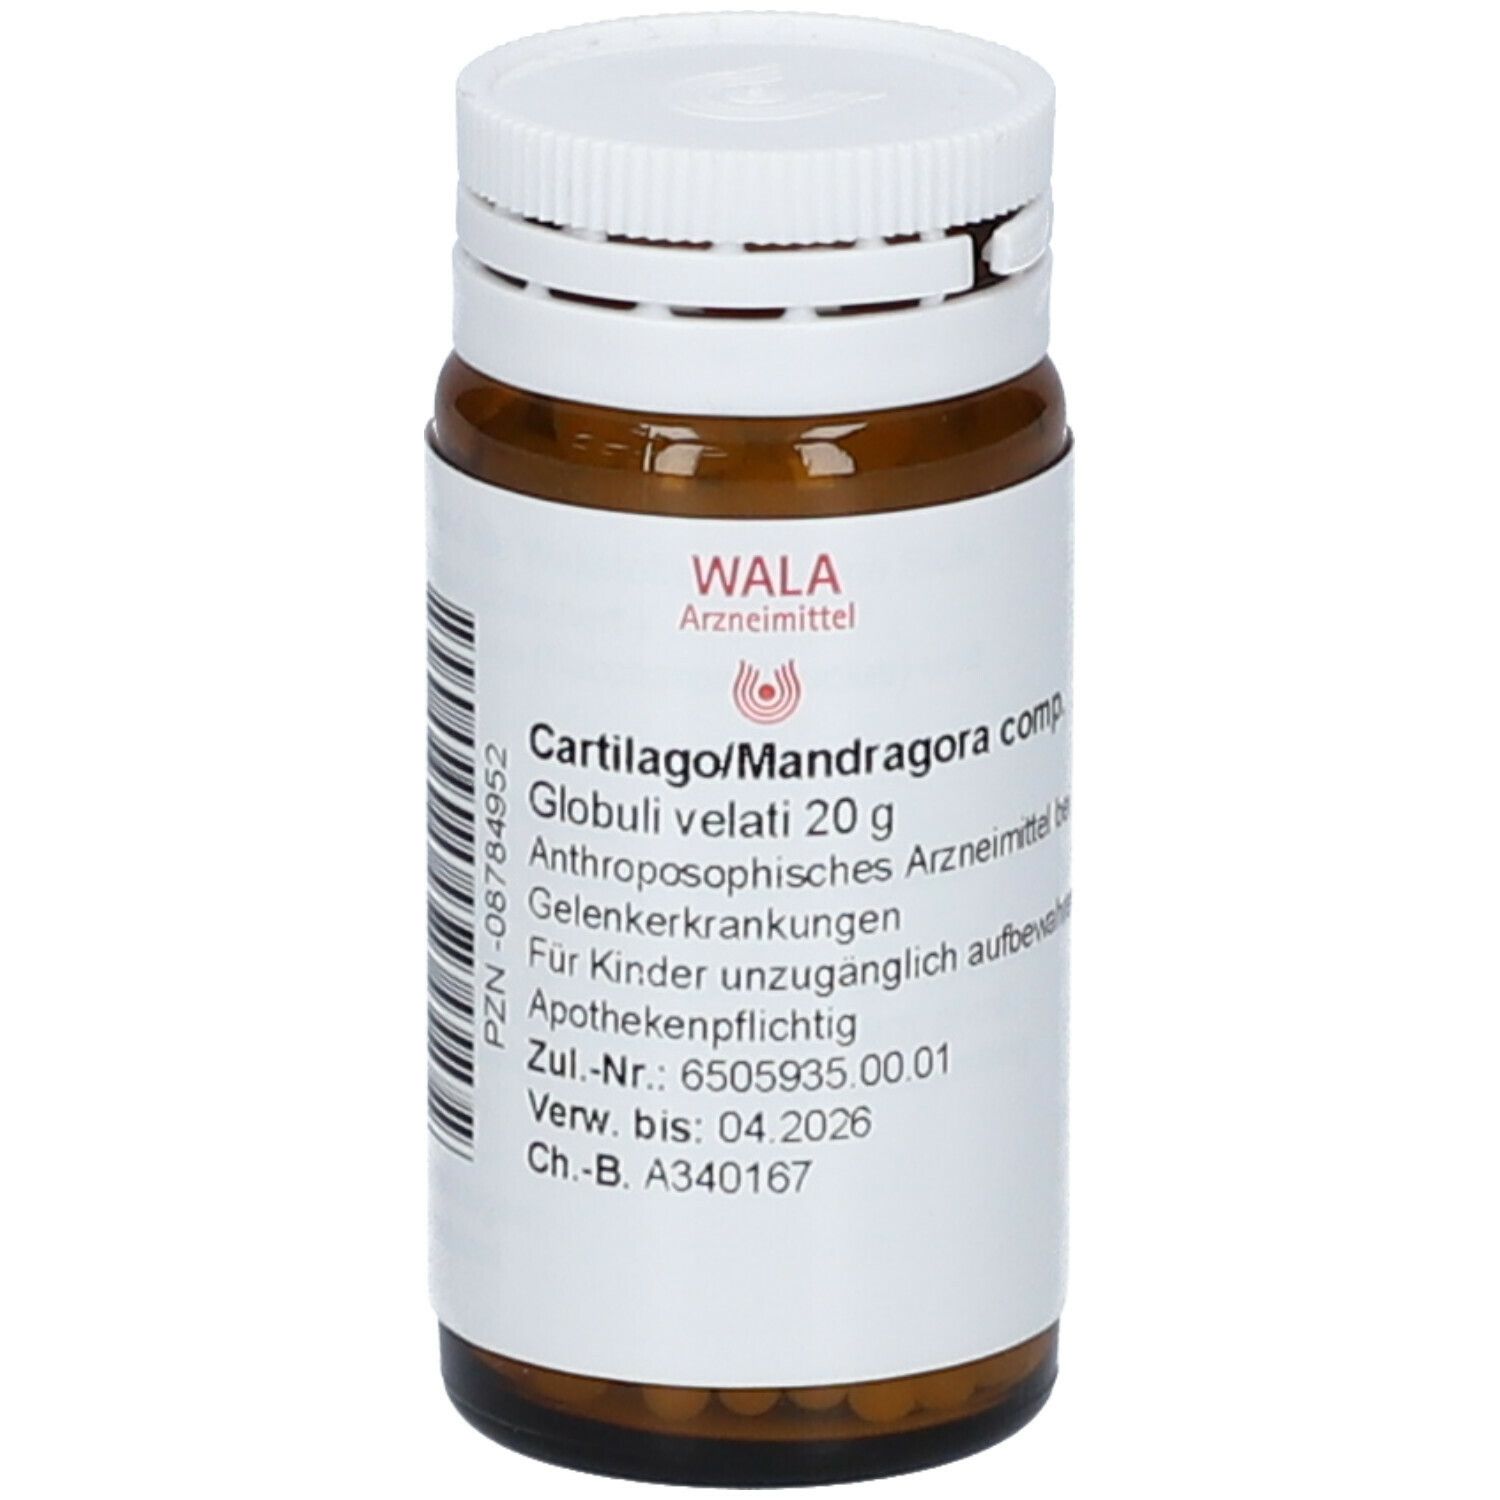 WALA® CARTILAGO/ Mandragora Comp. Globuli